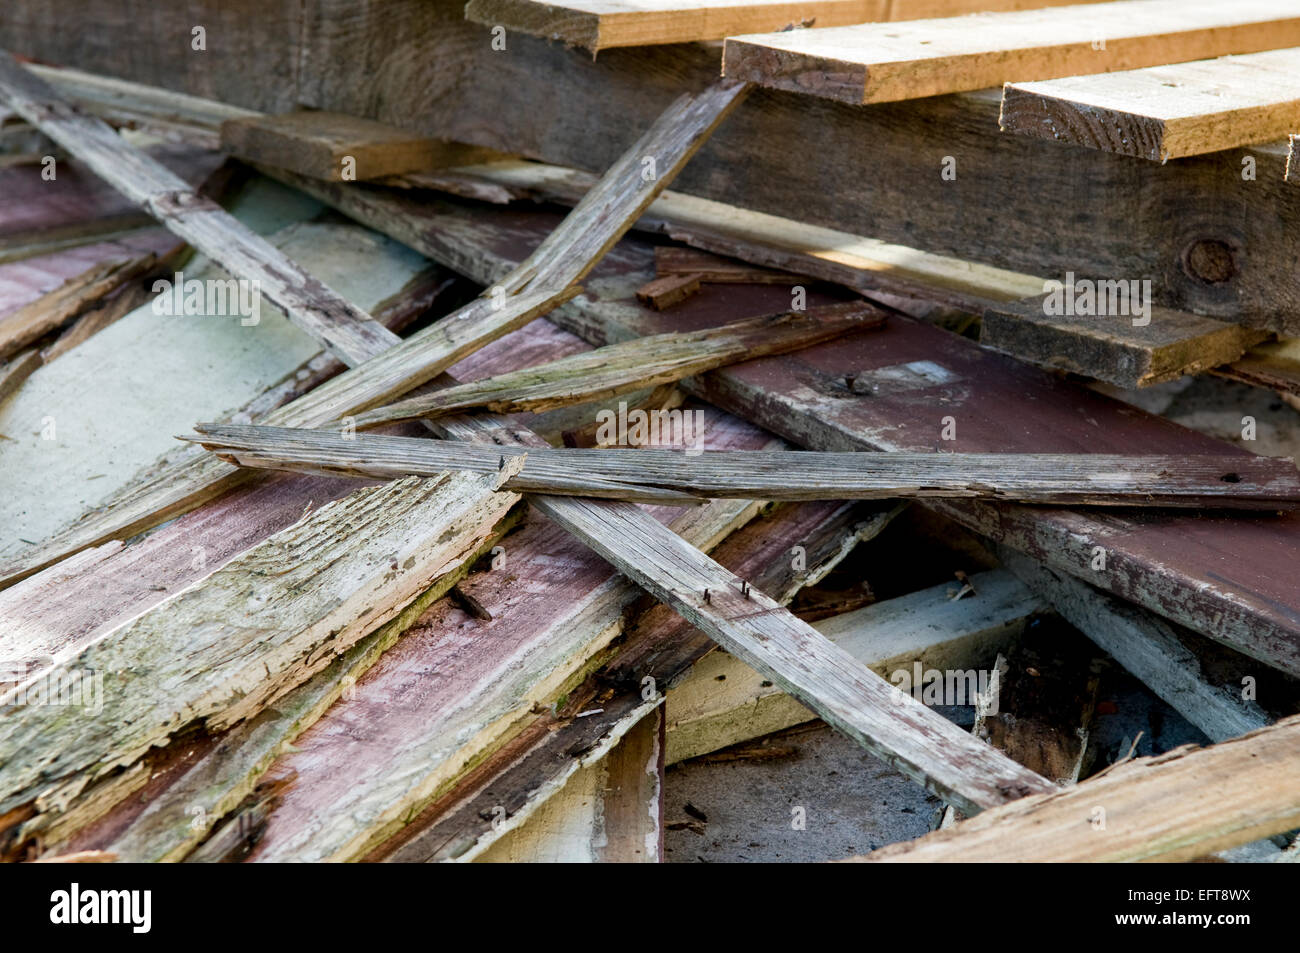 Des morceaux de bois cassés en tas dans le jardin, avec des clous qui le. Danger potentiel. Banque D'Images